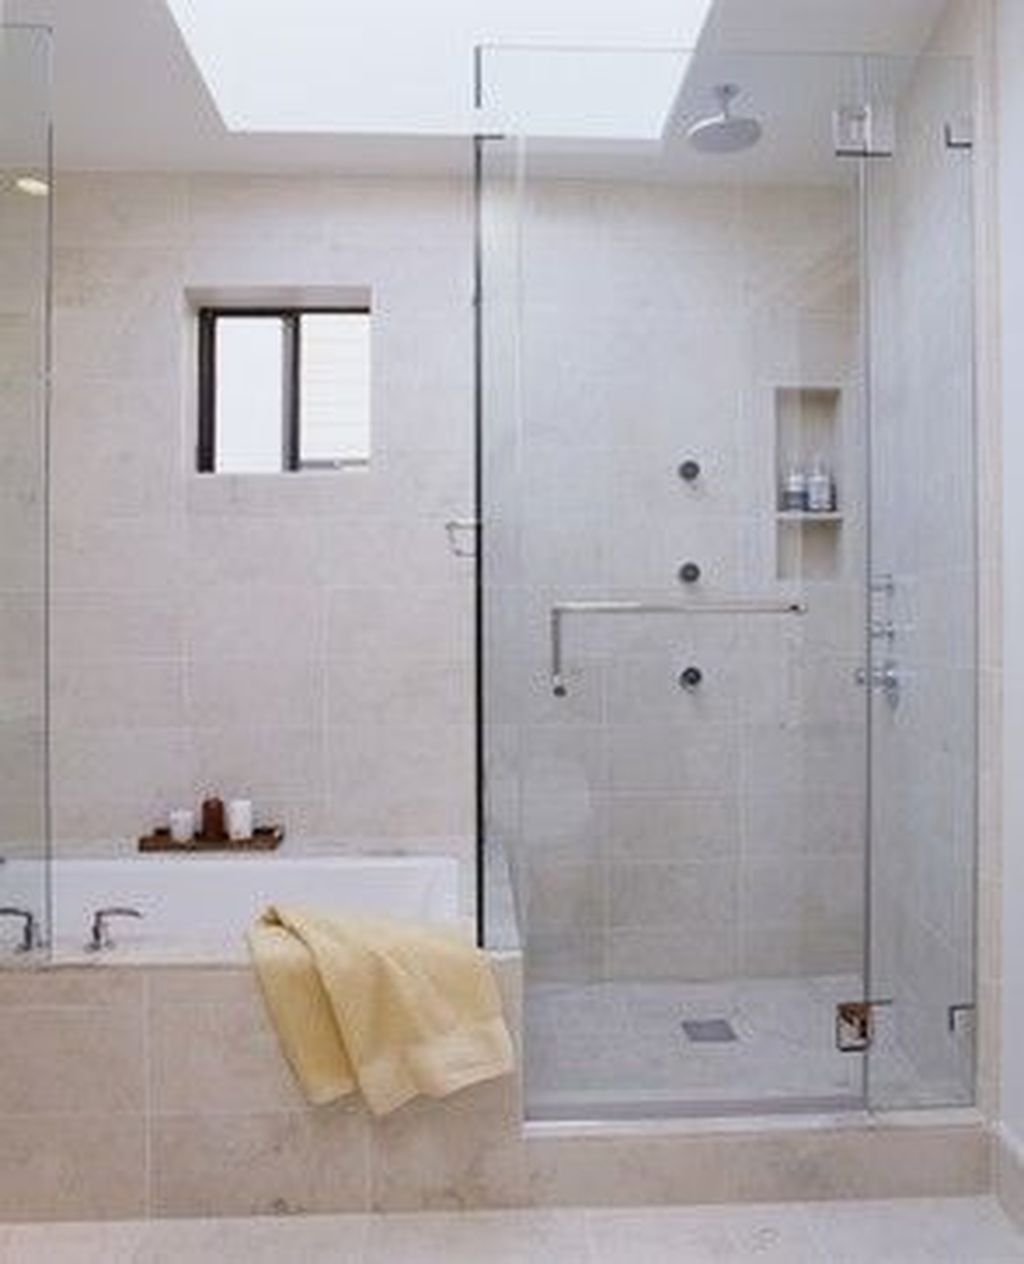 Brilliant Bathroom Design Ideas For Small Space 22